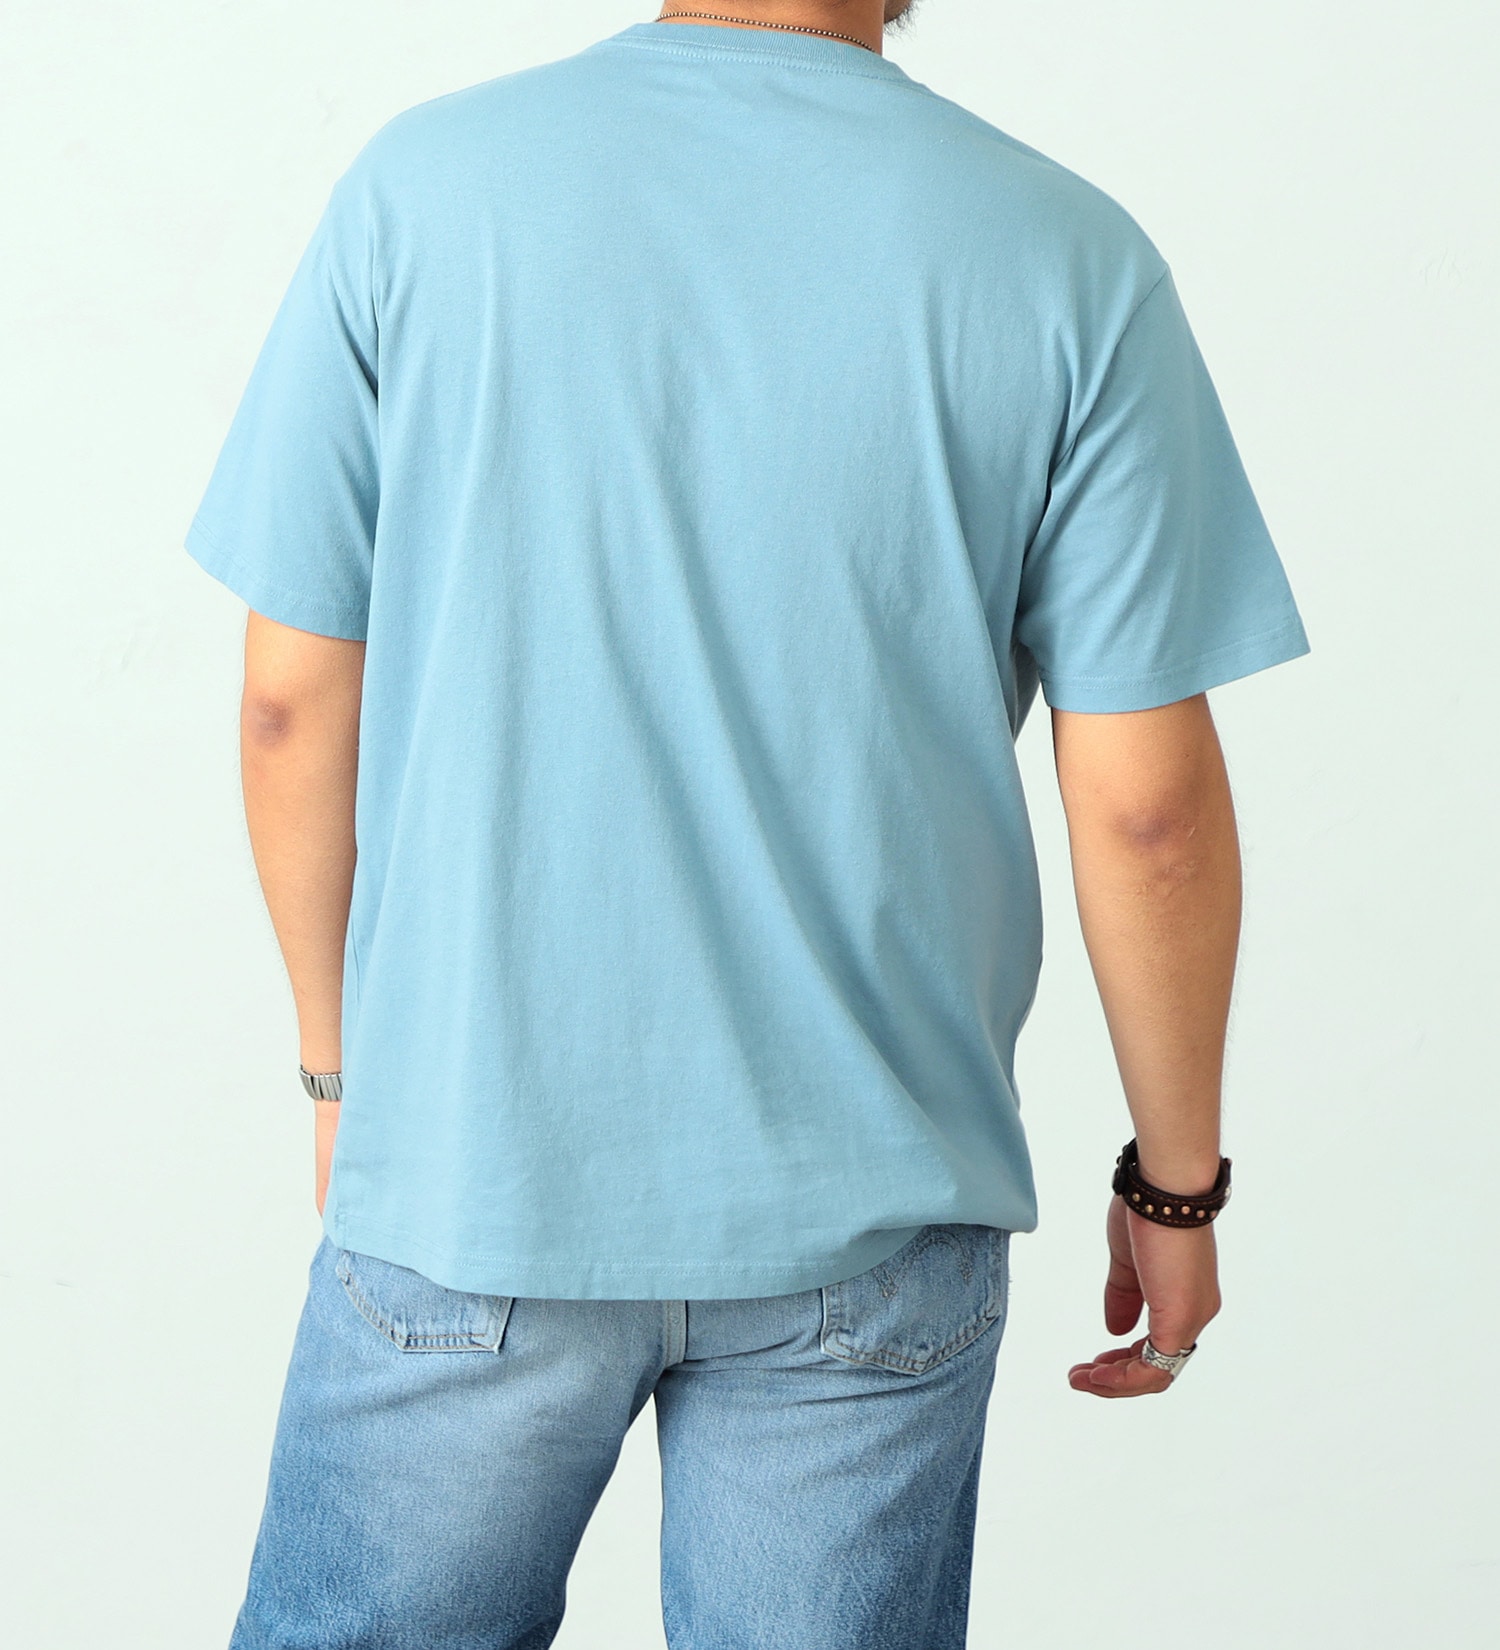 EDWIN(エドウイン)のイラストバックプリントTシャツ【アウトレット店舗・WEB限定】|トップス/Tシャツ/カットソー/メンズ|ライトブルー